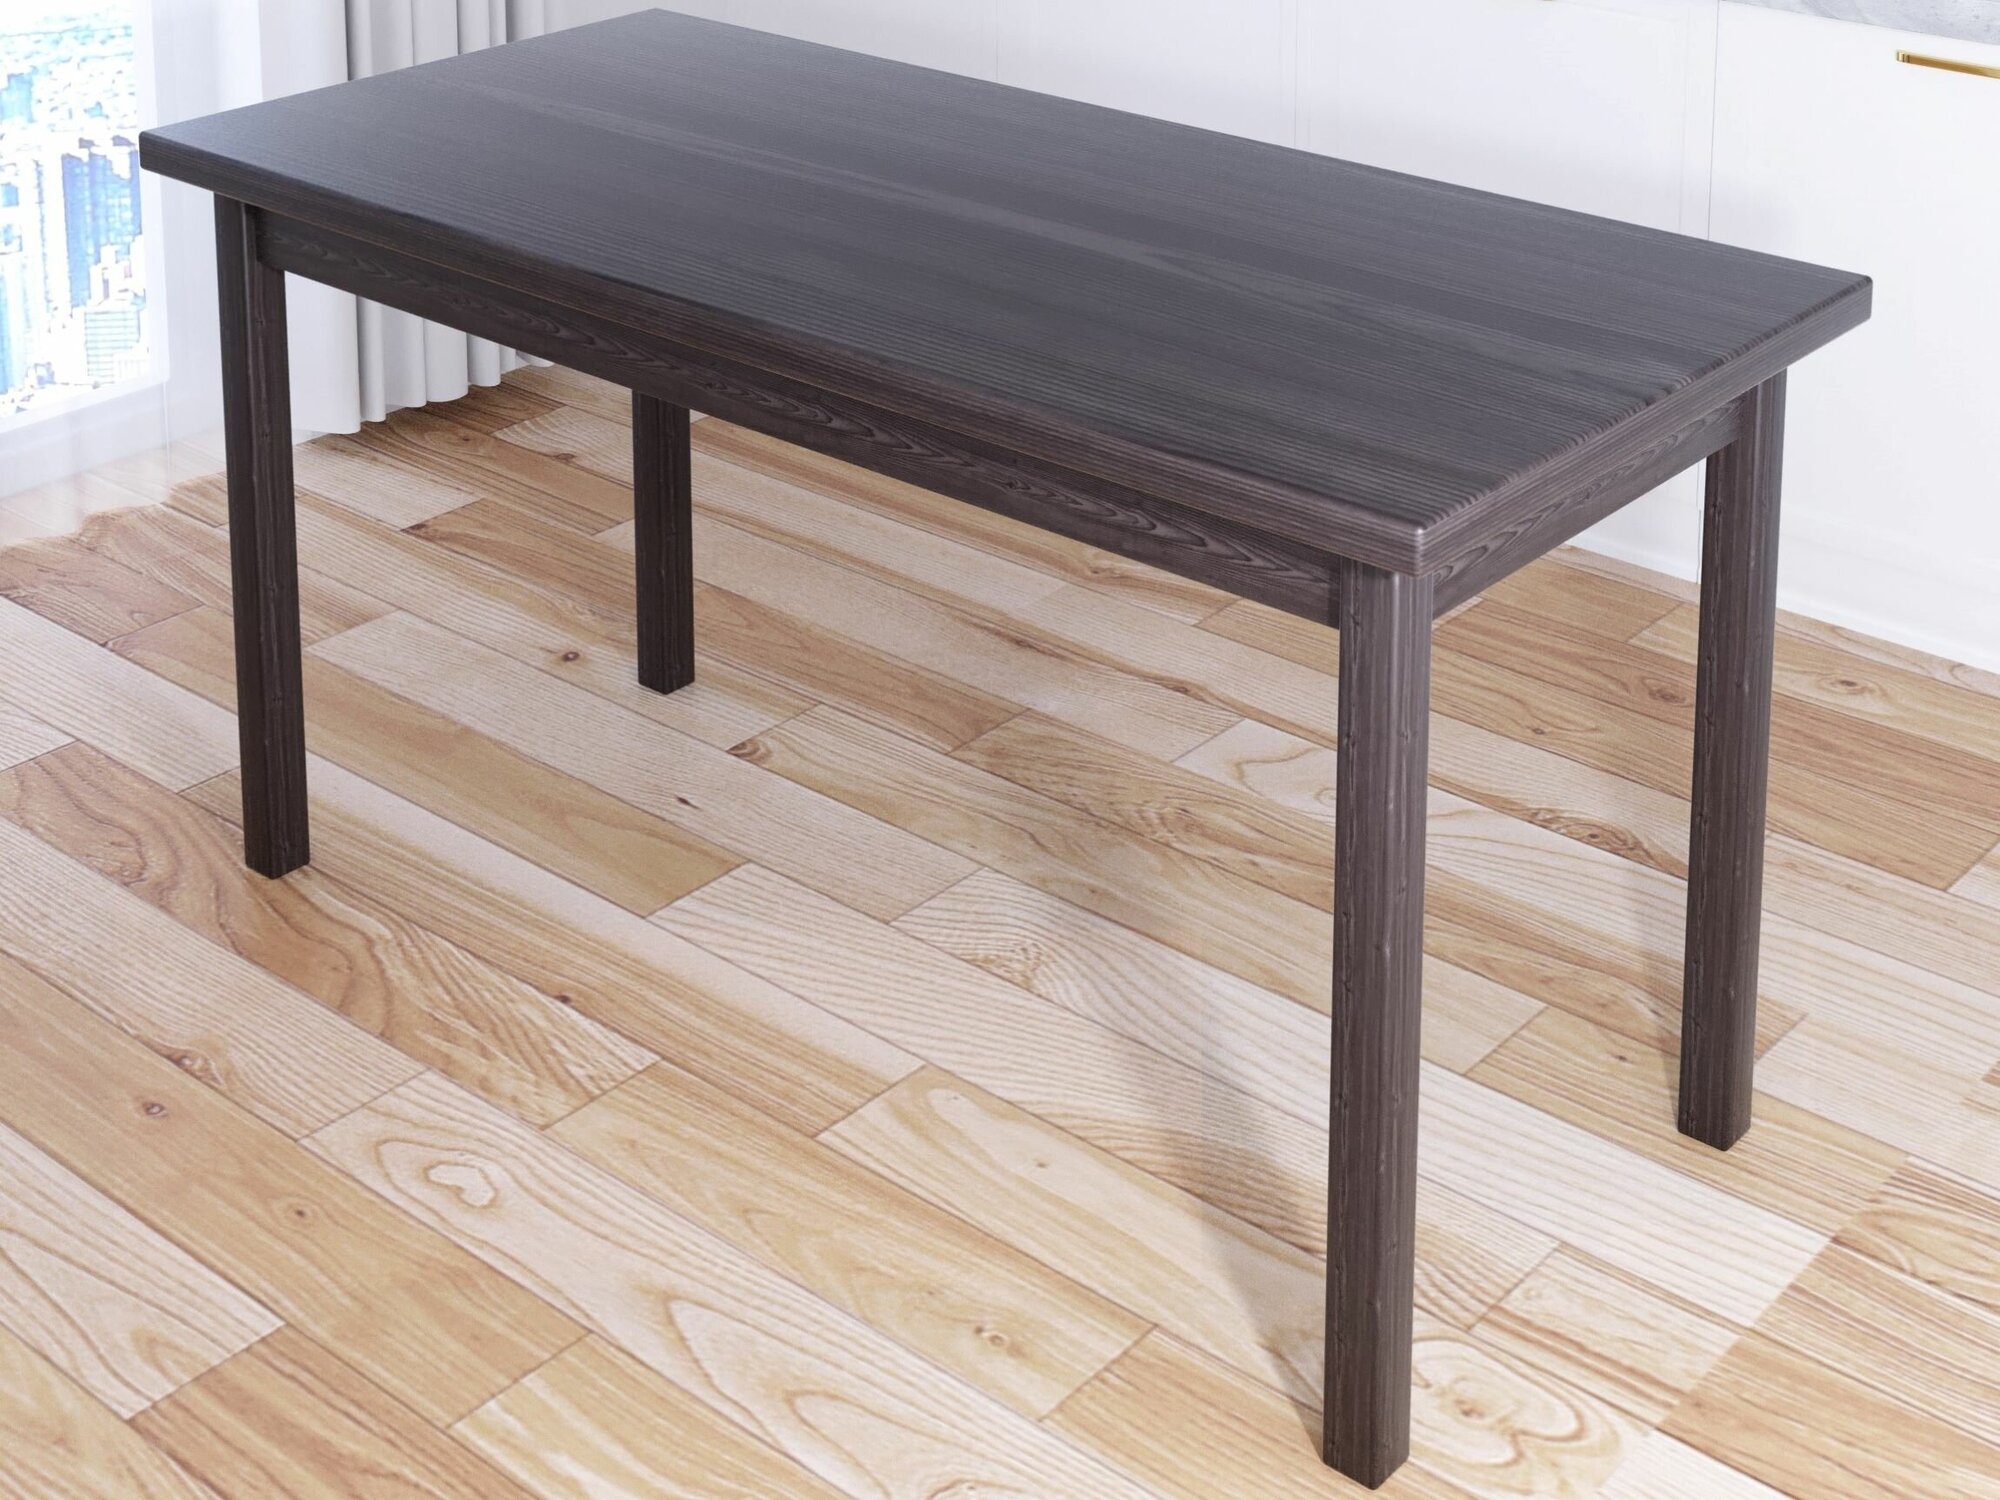 Стол кухонный Классика из массива сосны, столешница 40 мм и ножки цвета венге, 130х80х75 см